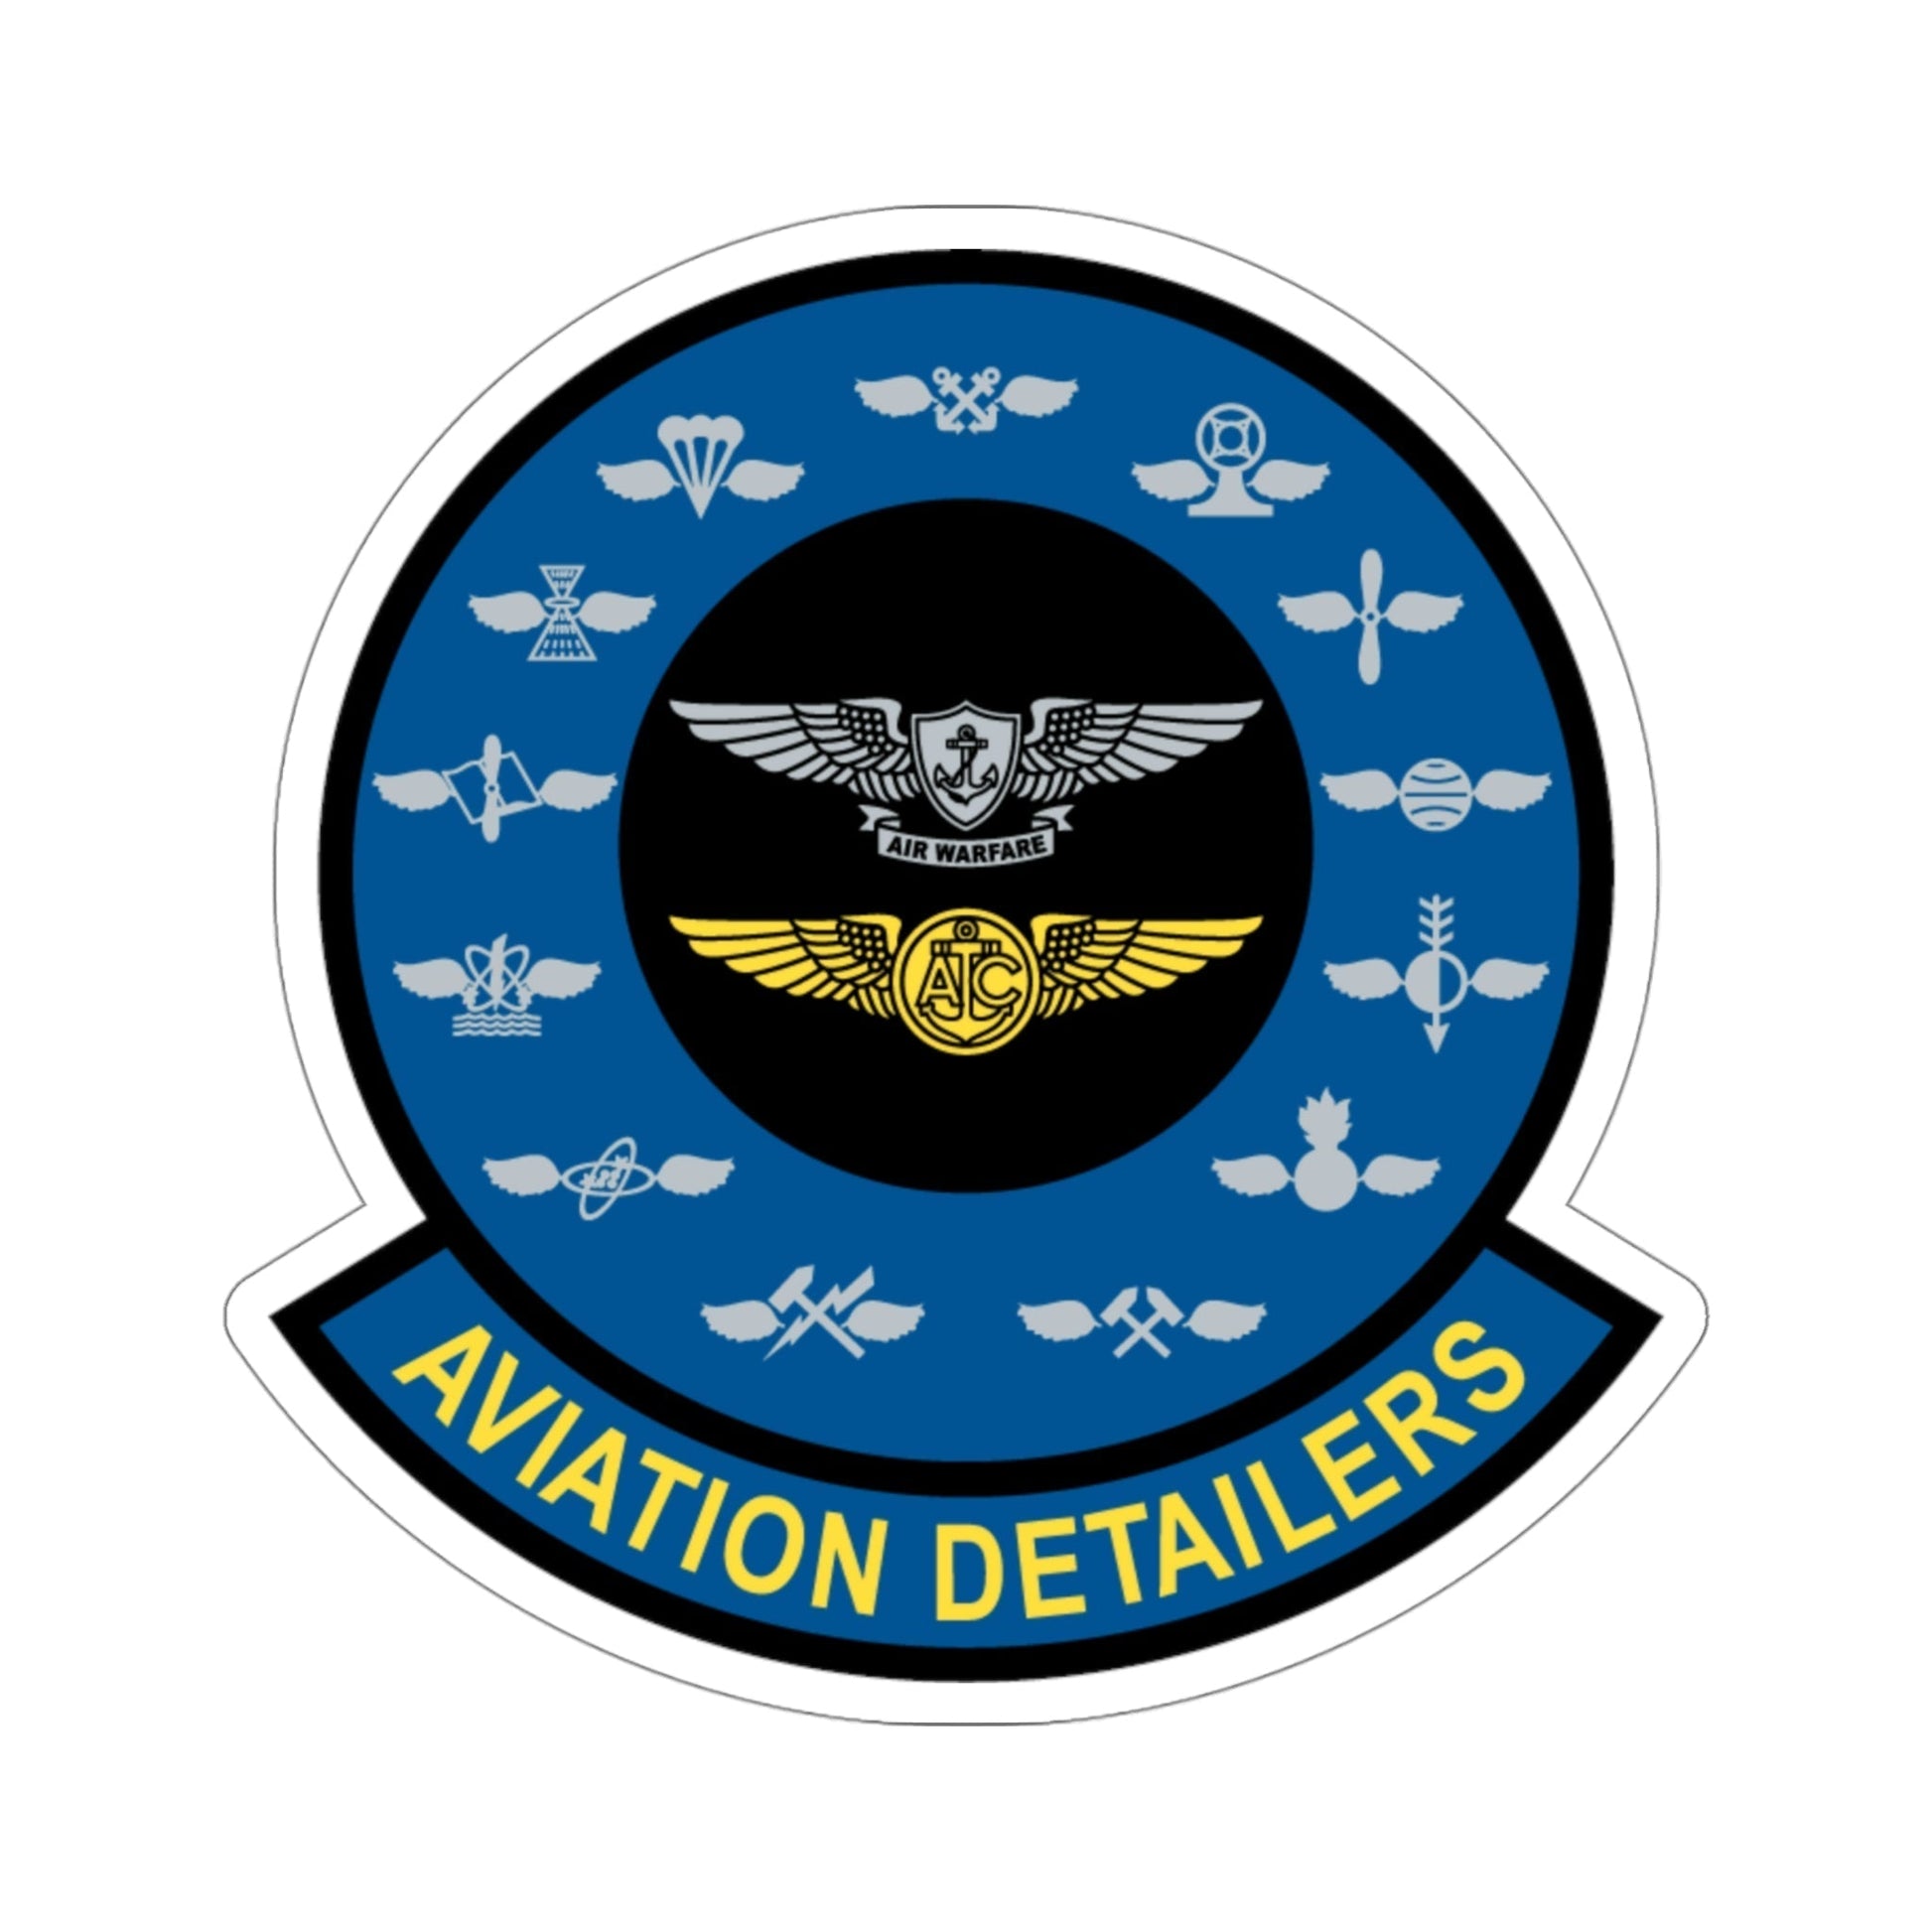 Aviation Detailers (U.S. Navy) STICKER Vinyl Die-Cut Decal-4 Inch-The Sticker Space